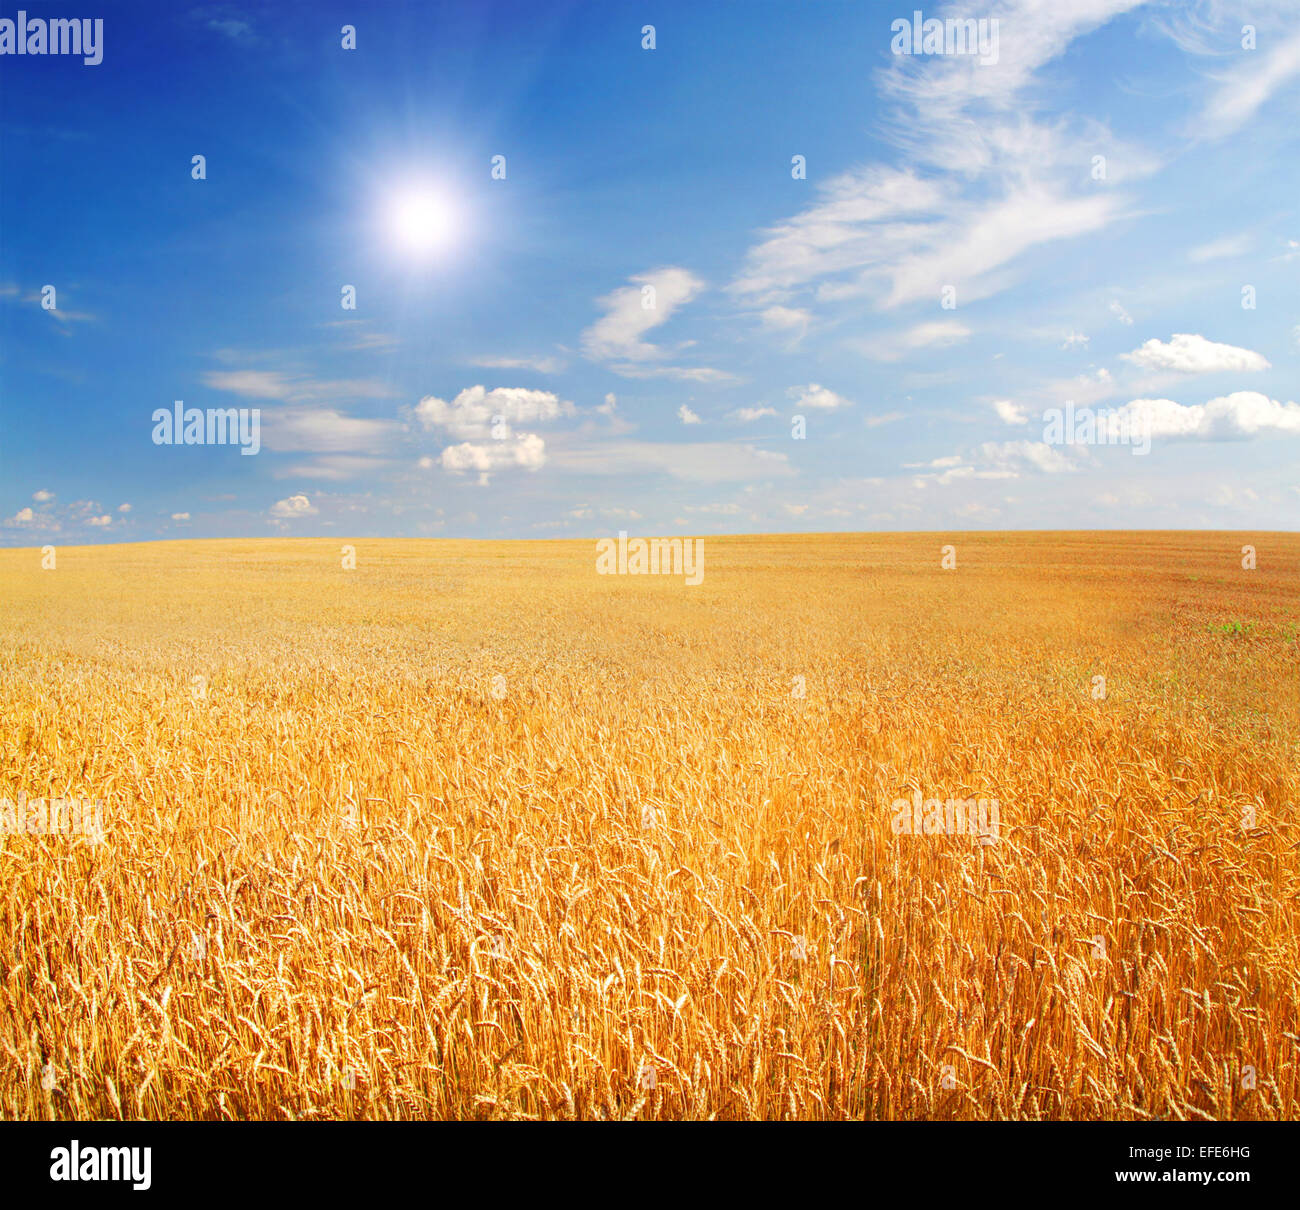 Champ de blé avec sun shining Banque D'Images